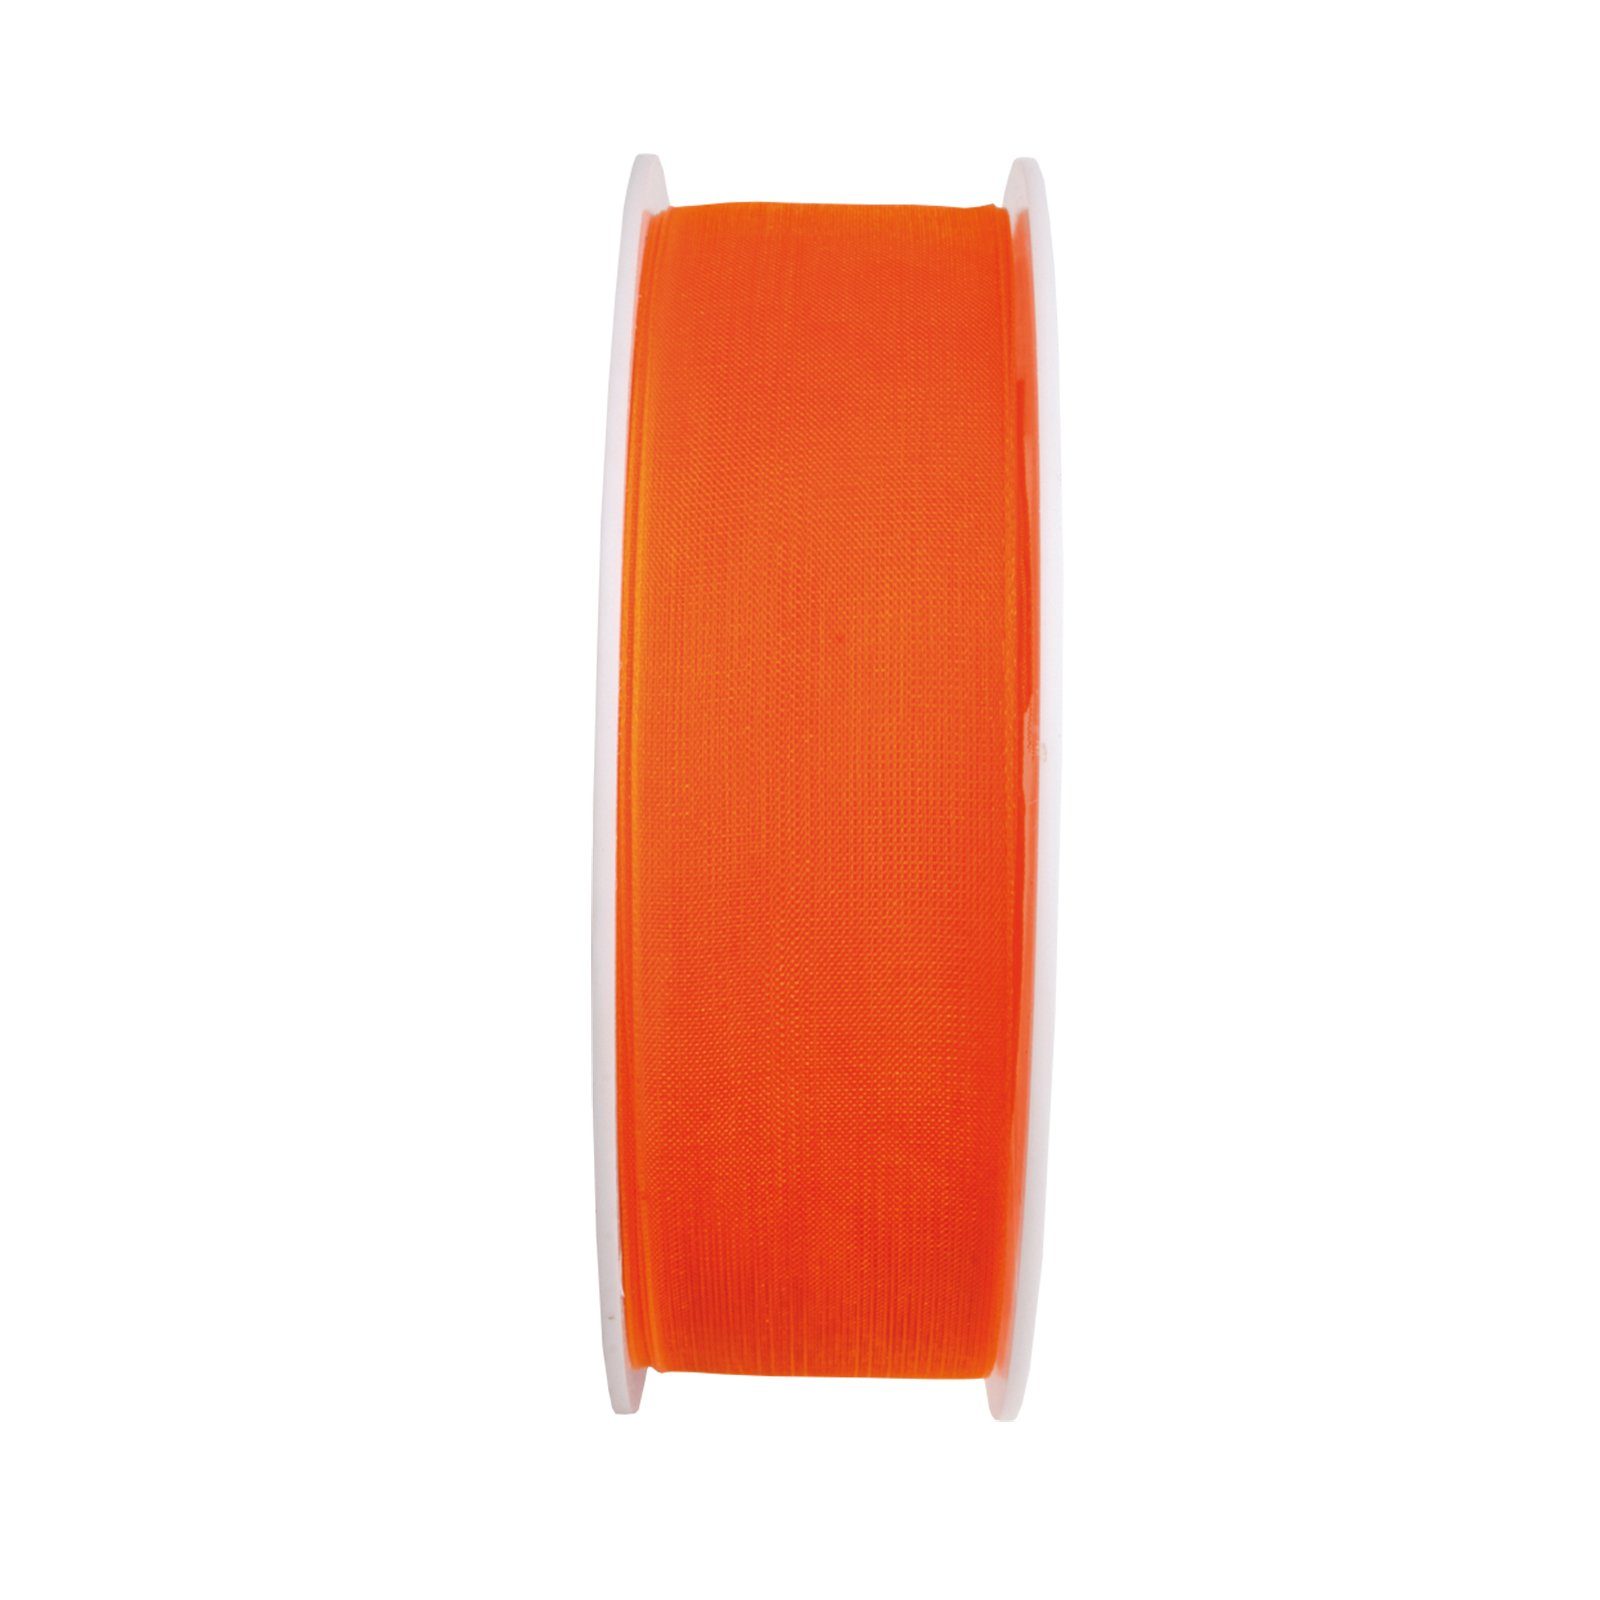 Maar & Pick KG Beschriftungsband Chiffon - orange - 12 mm - 25 m